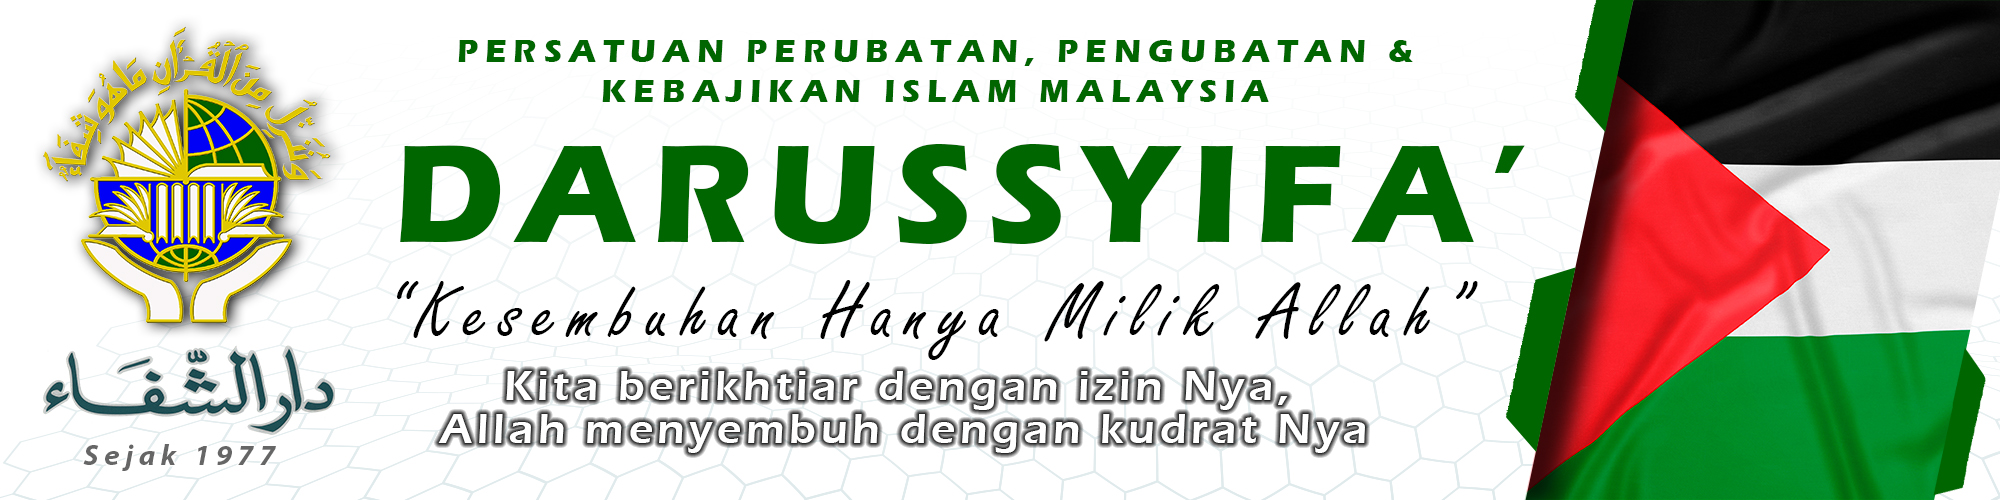 Persatuan Perubatan, Pengubatan & Kebajikan Islam Malaysia